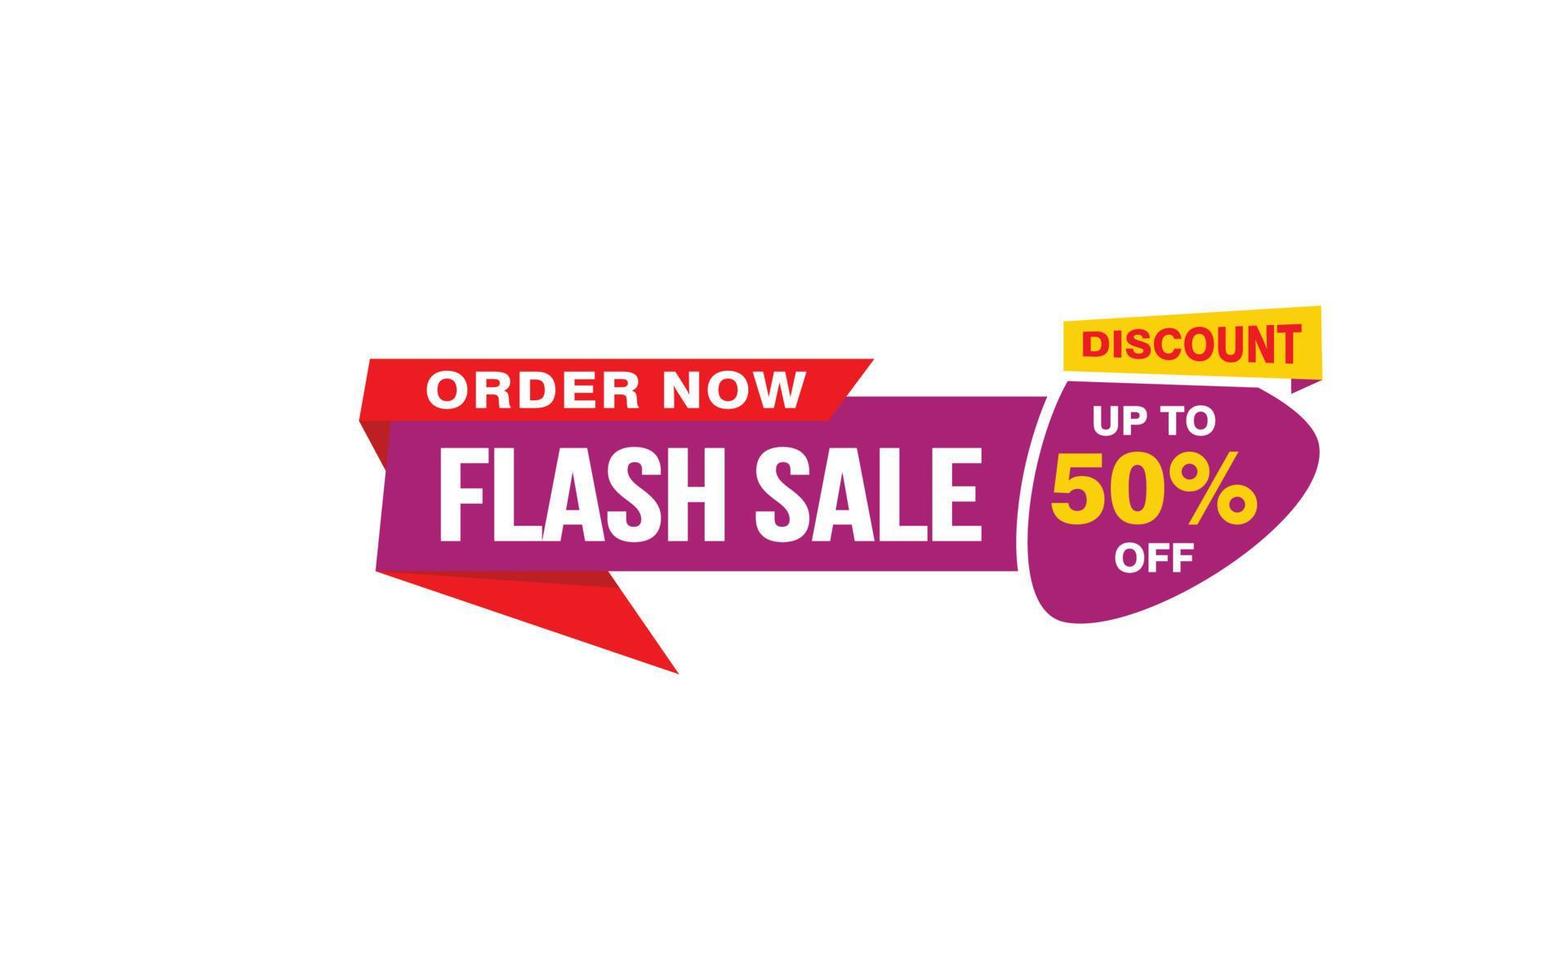 Oferta de venta flash del 50 por ciento, liquidación, diseño de banner de promoción con estilo de etiqueta. vector